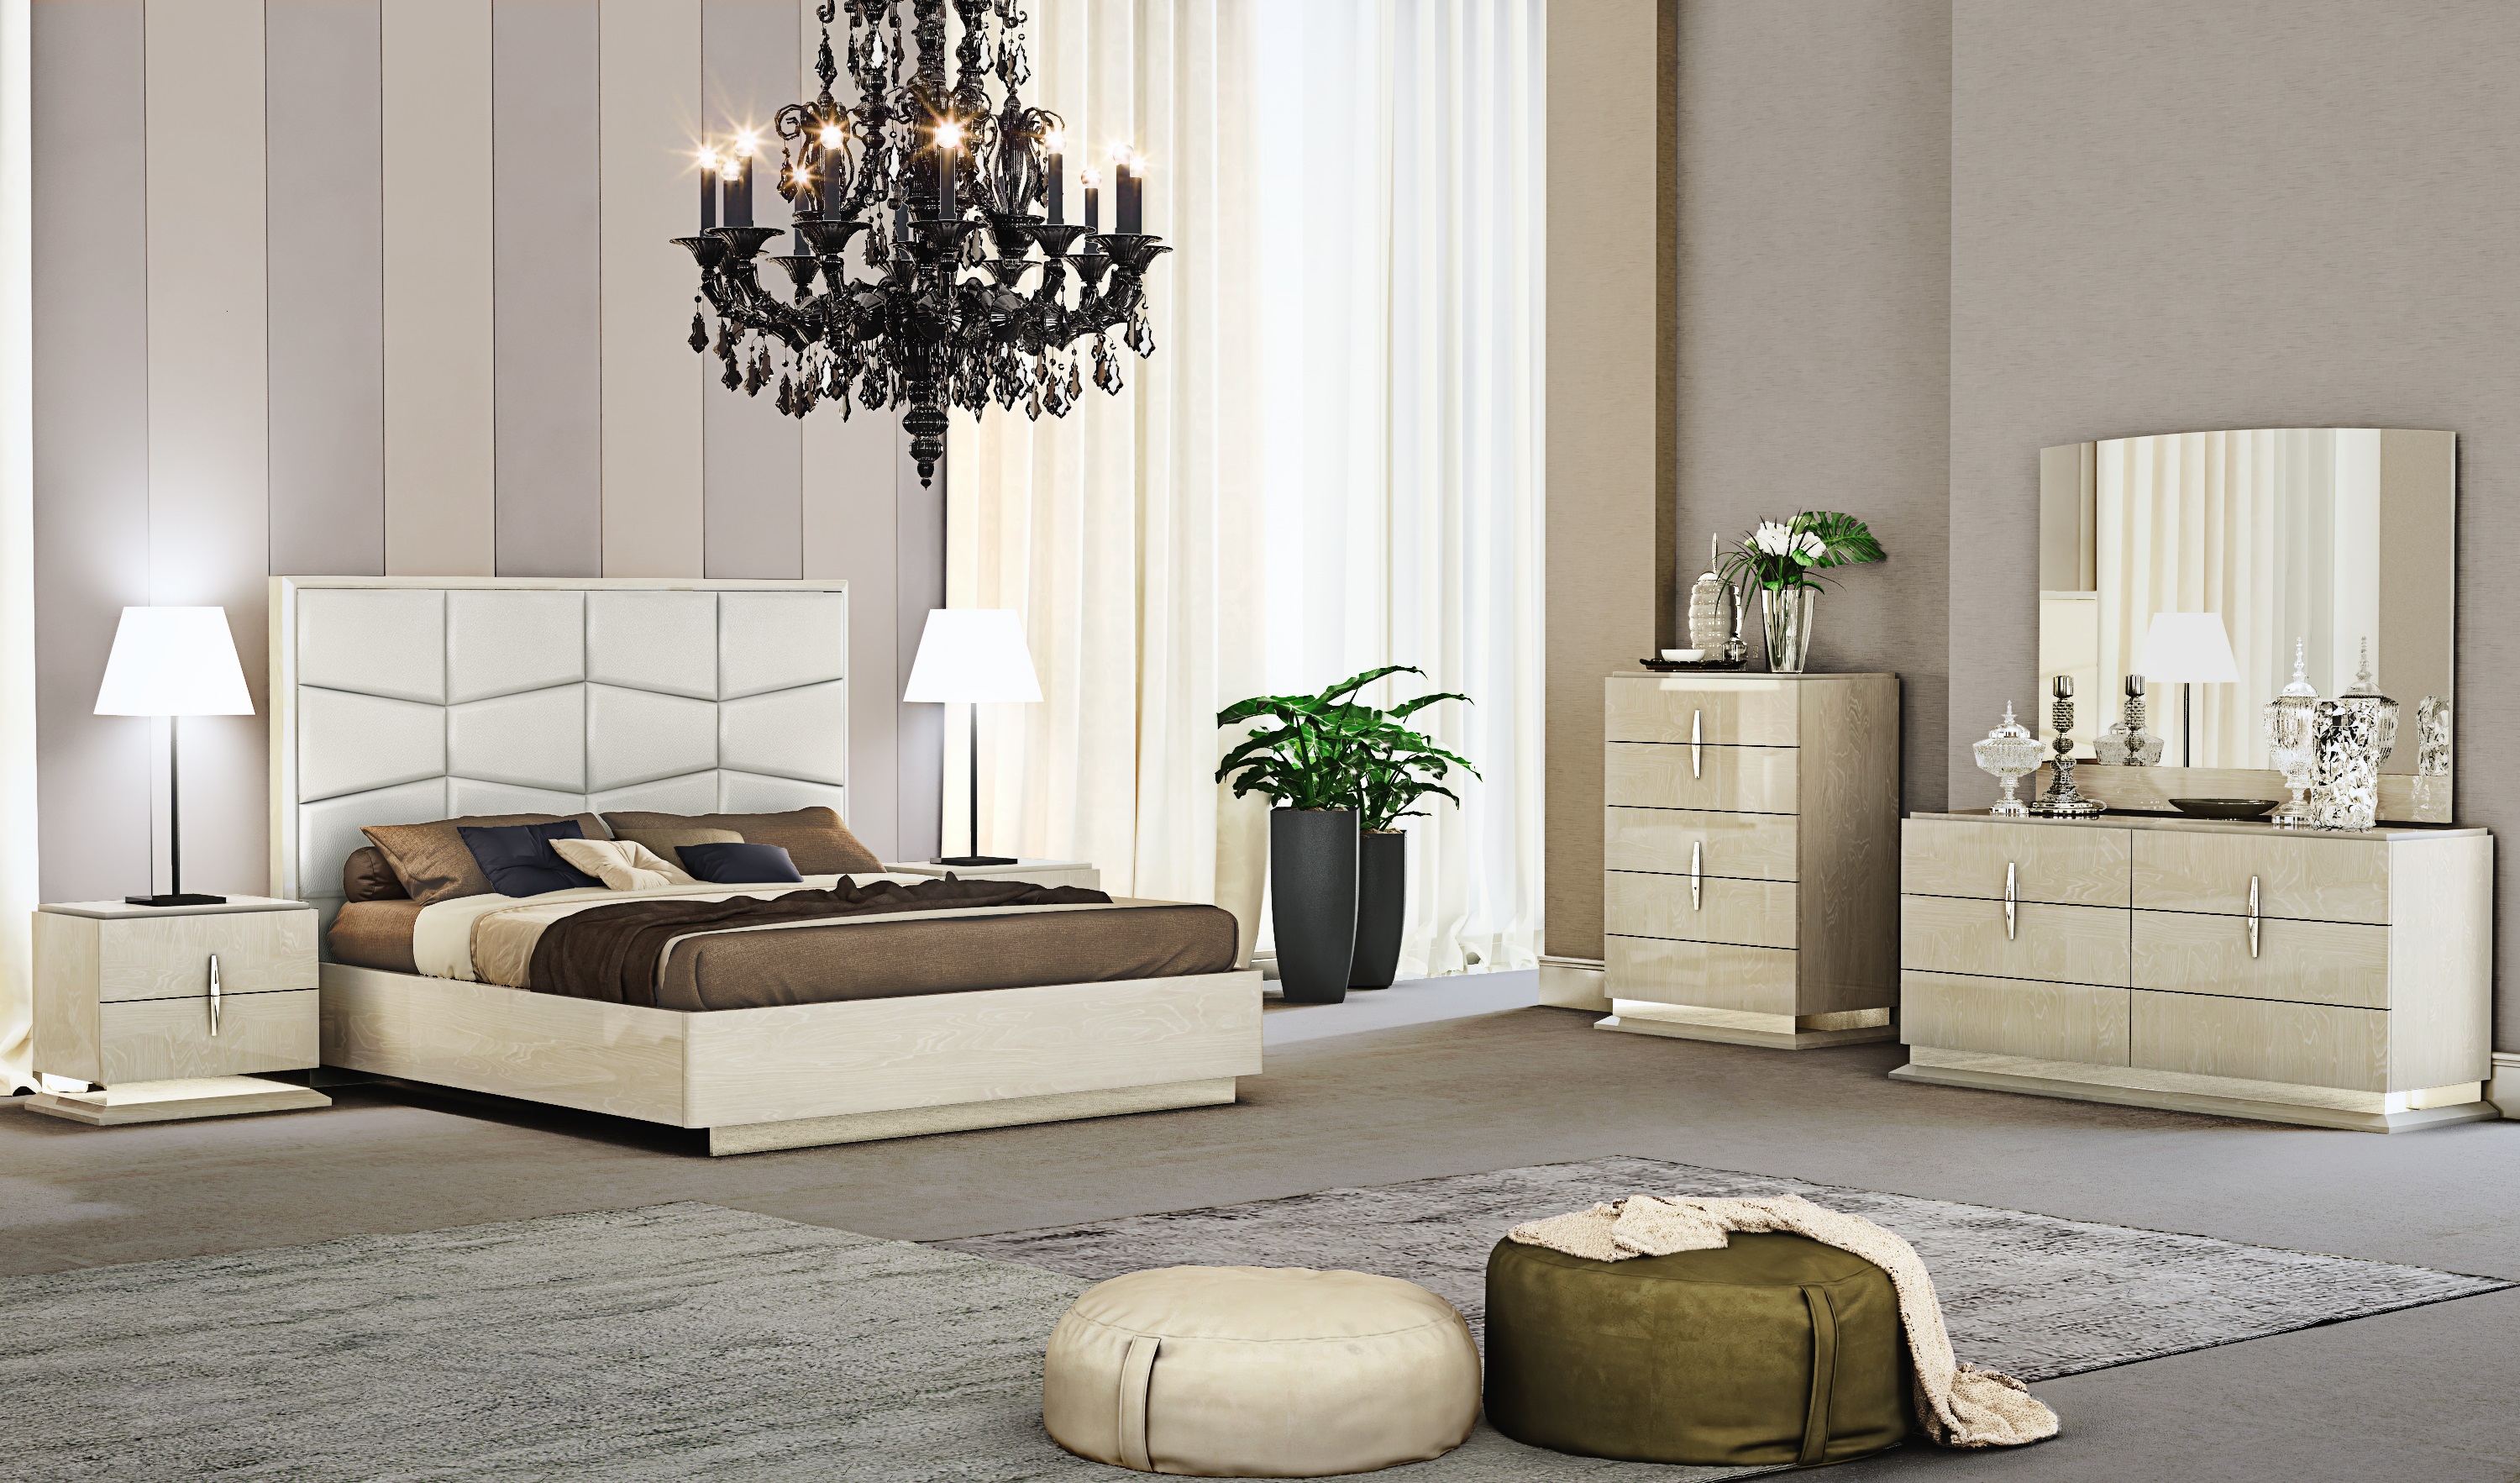 7 pieces luxury bedroom furniture